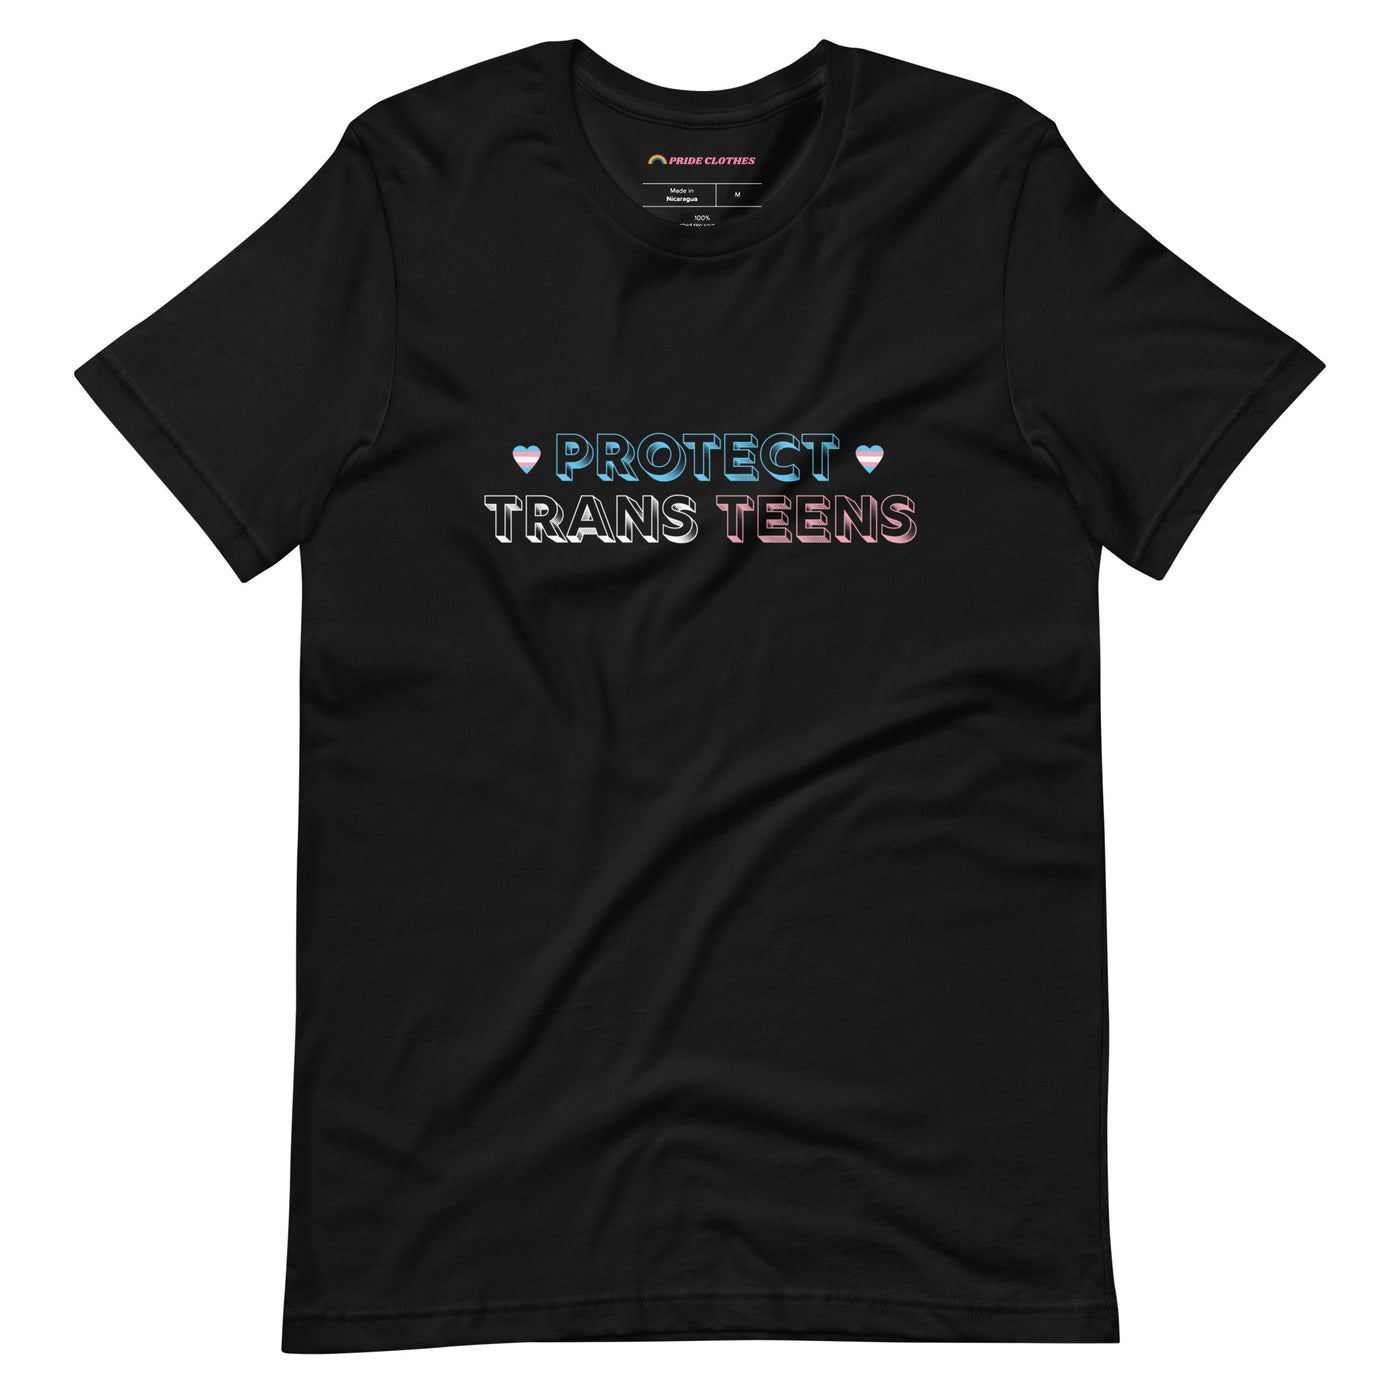 Pride Clothes - Trans Teens Matter Protect Trans Teens Pride T-Shirt - Black